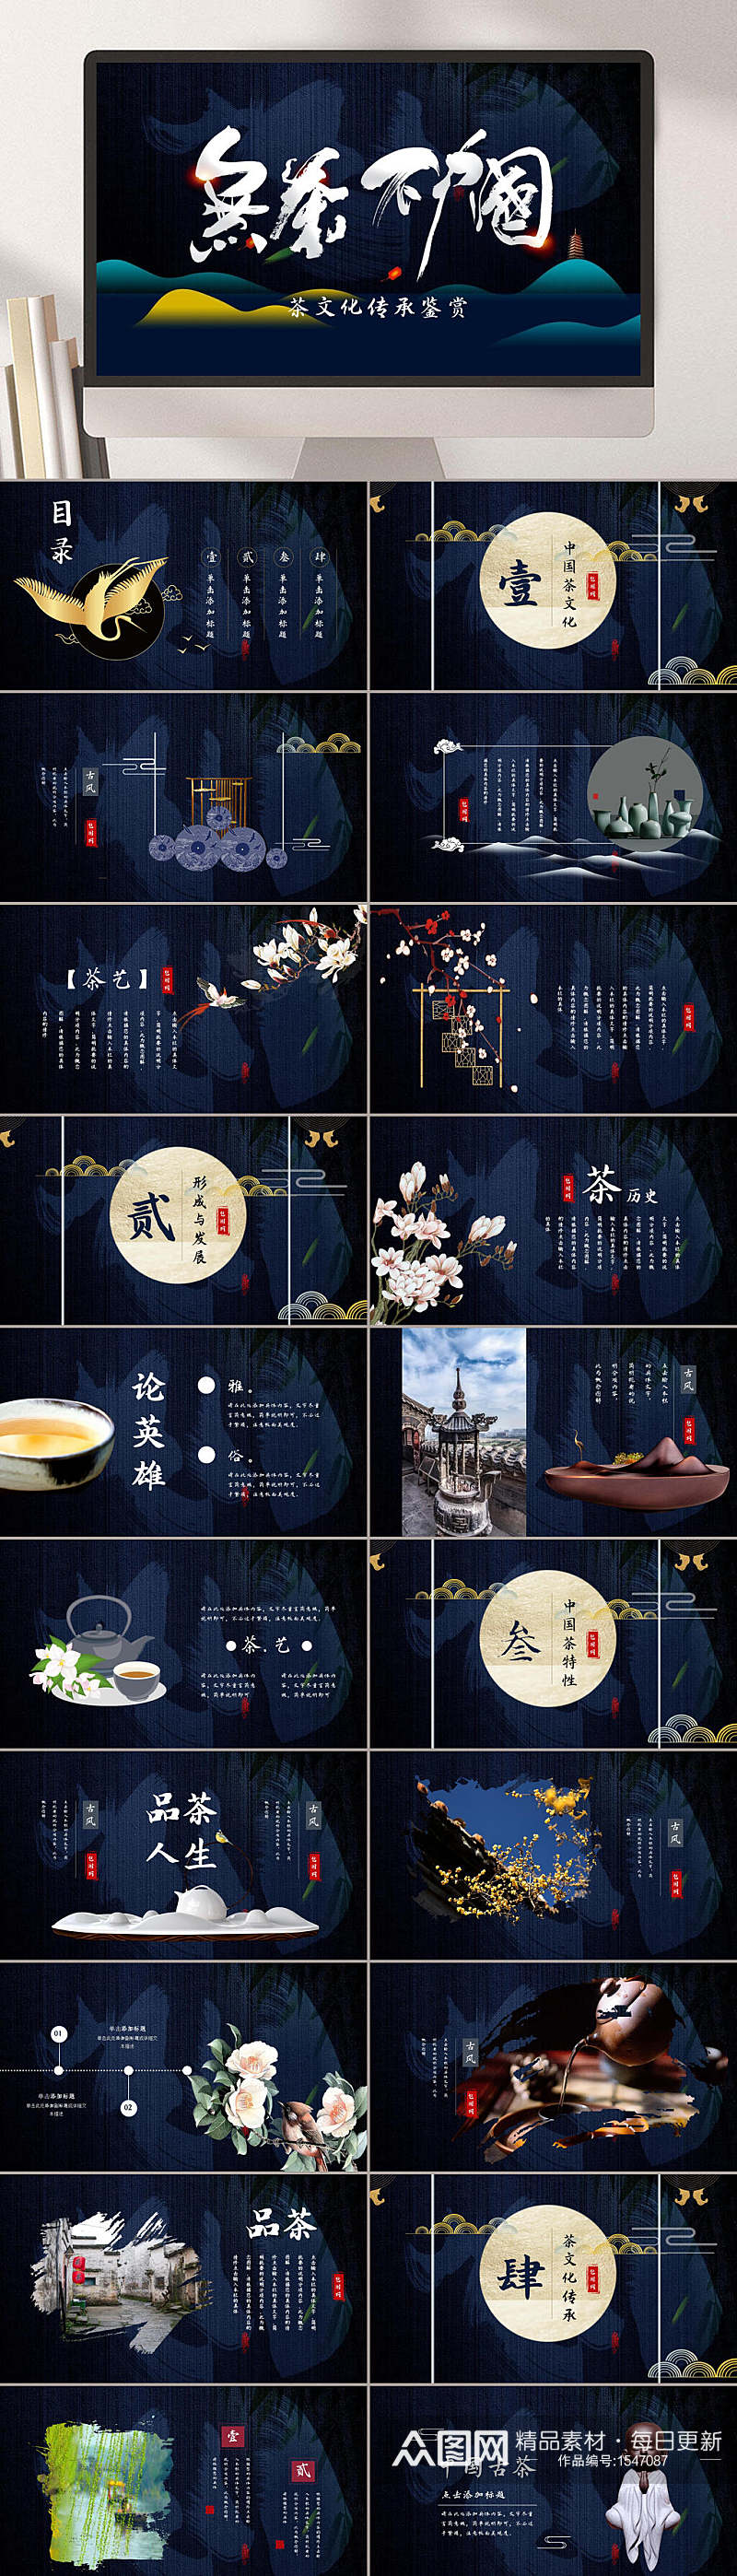 中国风茶宣传册PPT模板素材